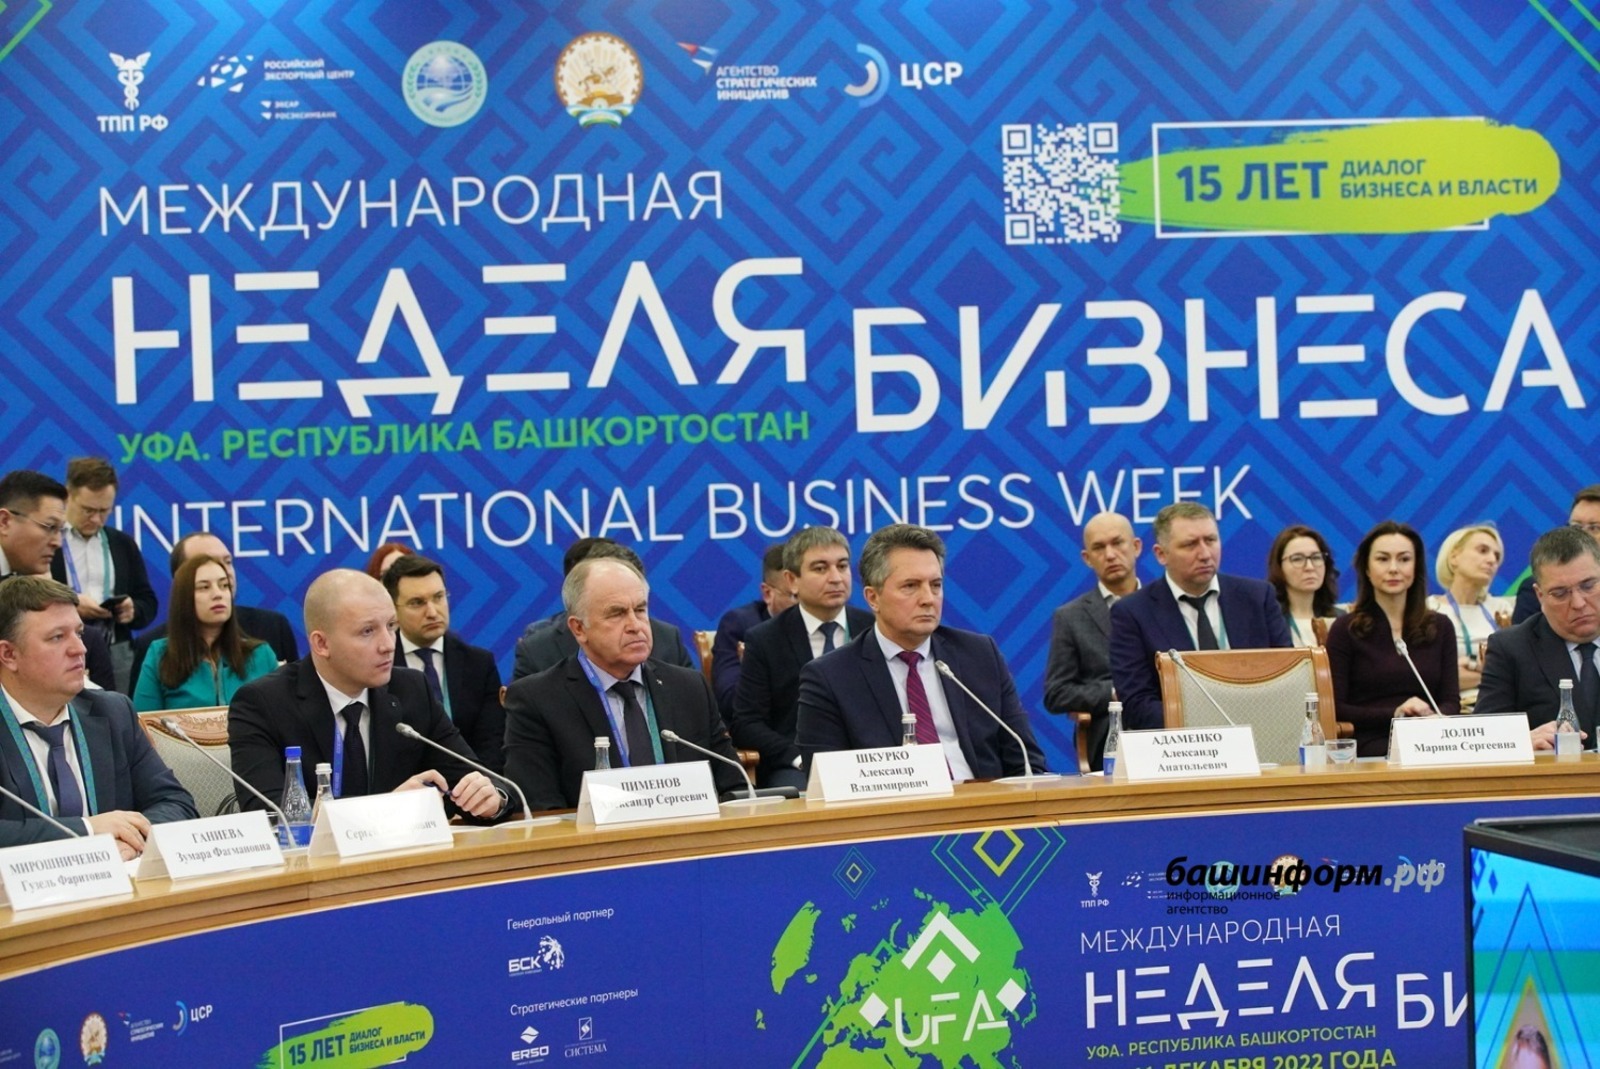 Андрей Назаров предложил создать музей предпринимательства в Уфе